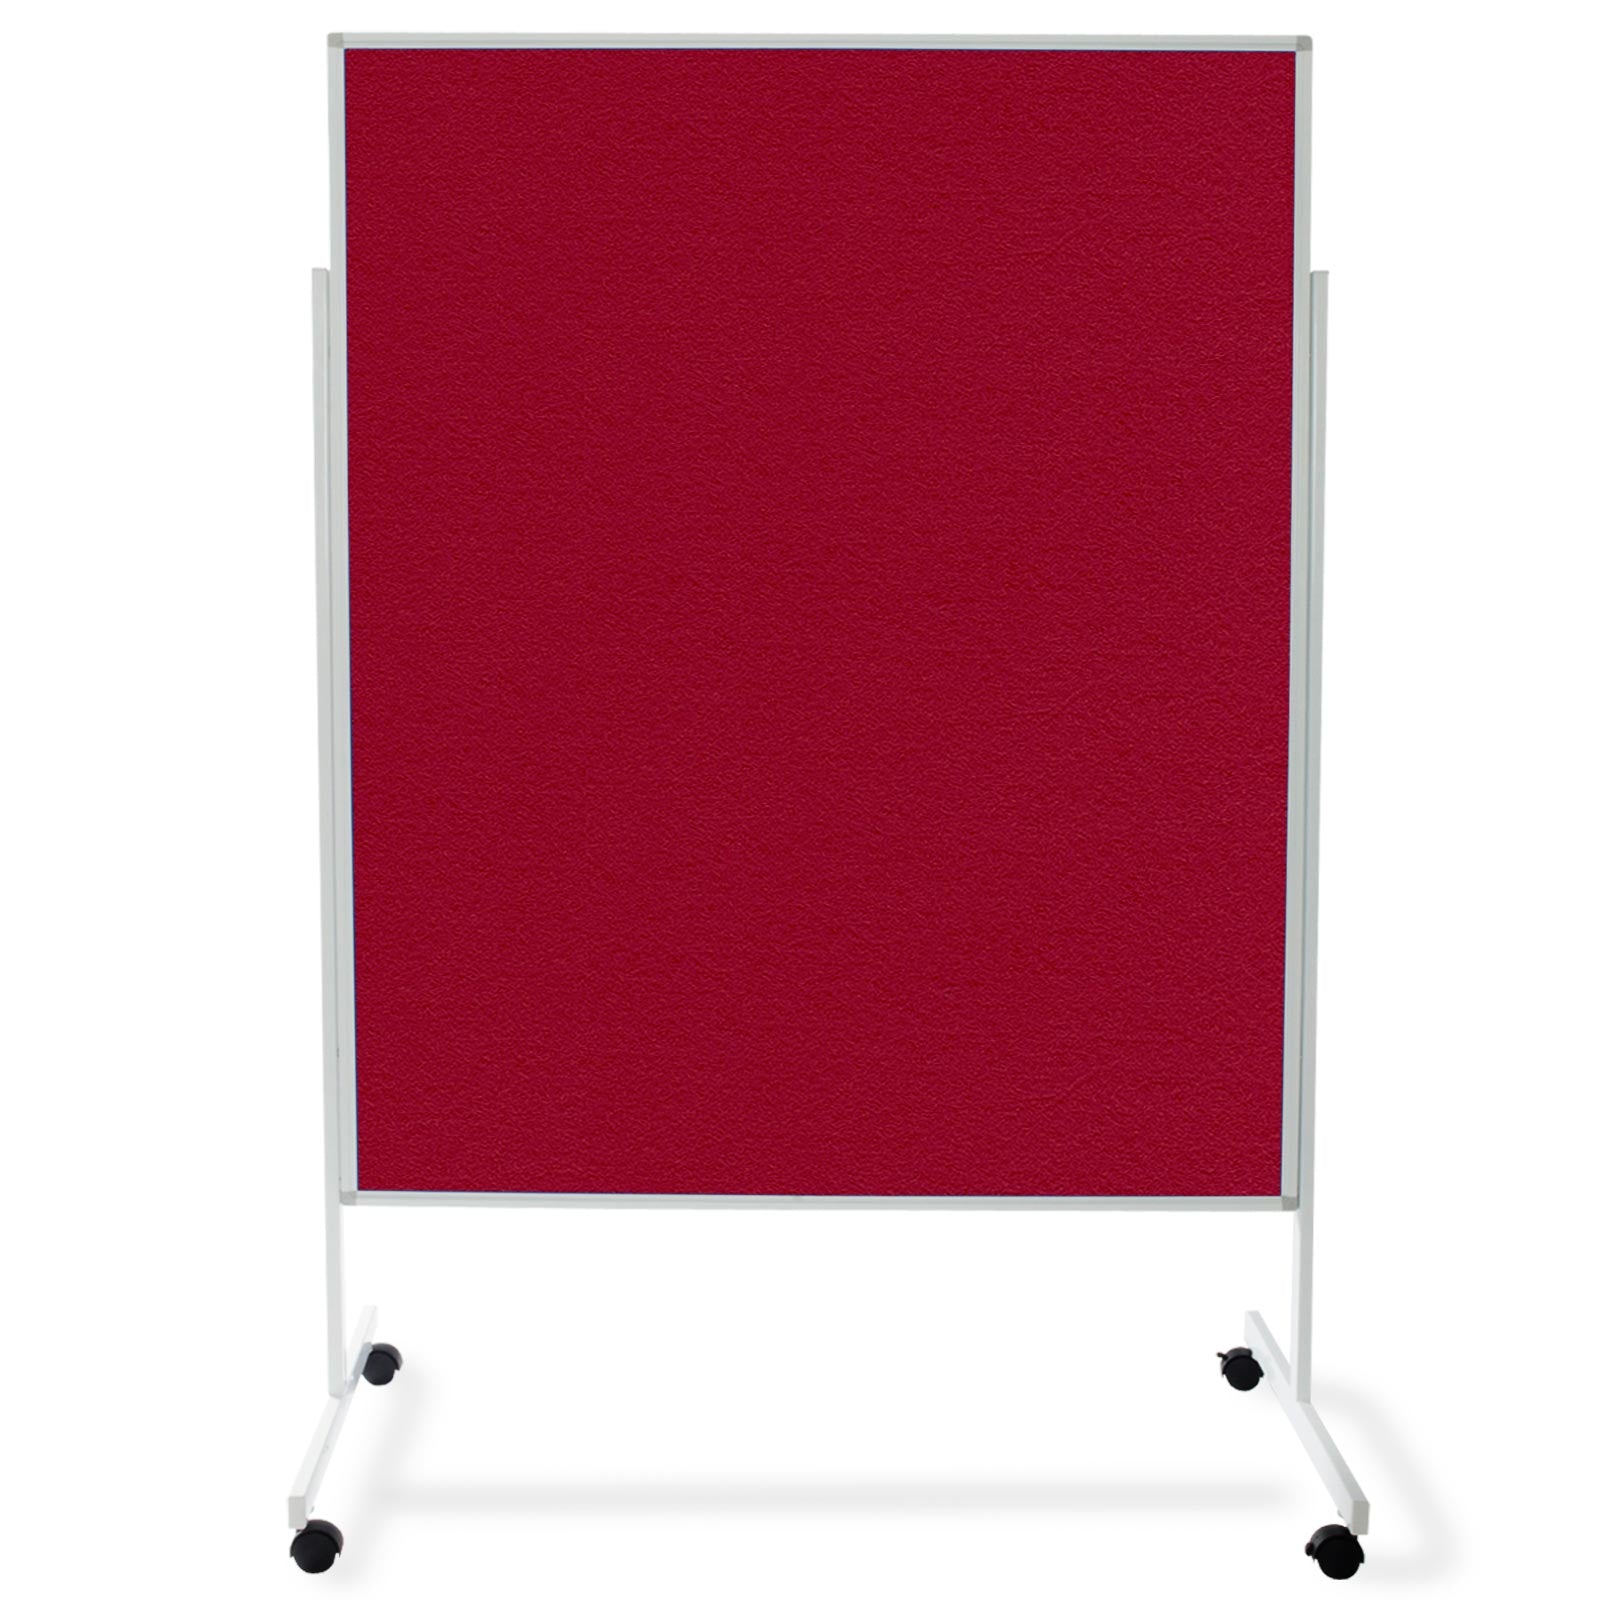 Filz-Moderationstafel Einteilig Mit Rollen 150x120 cm 3 Farben | Rot